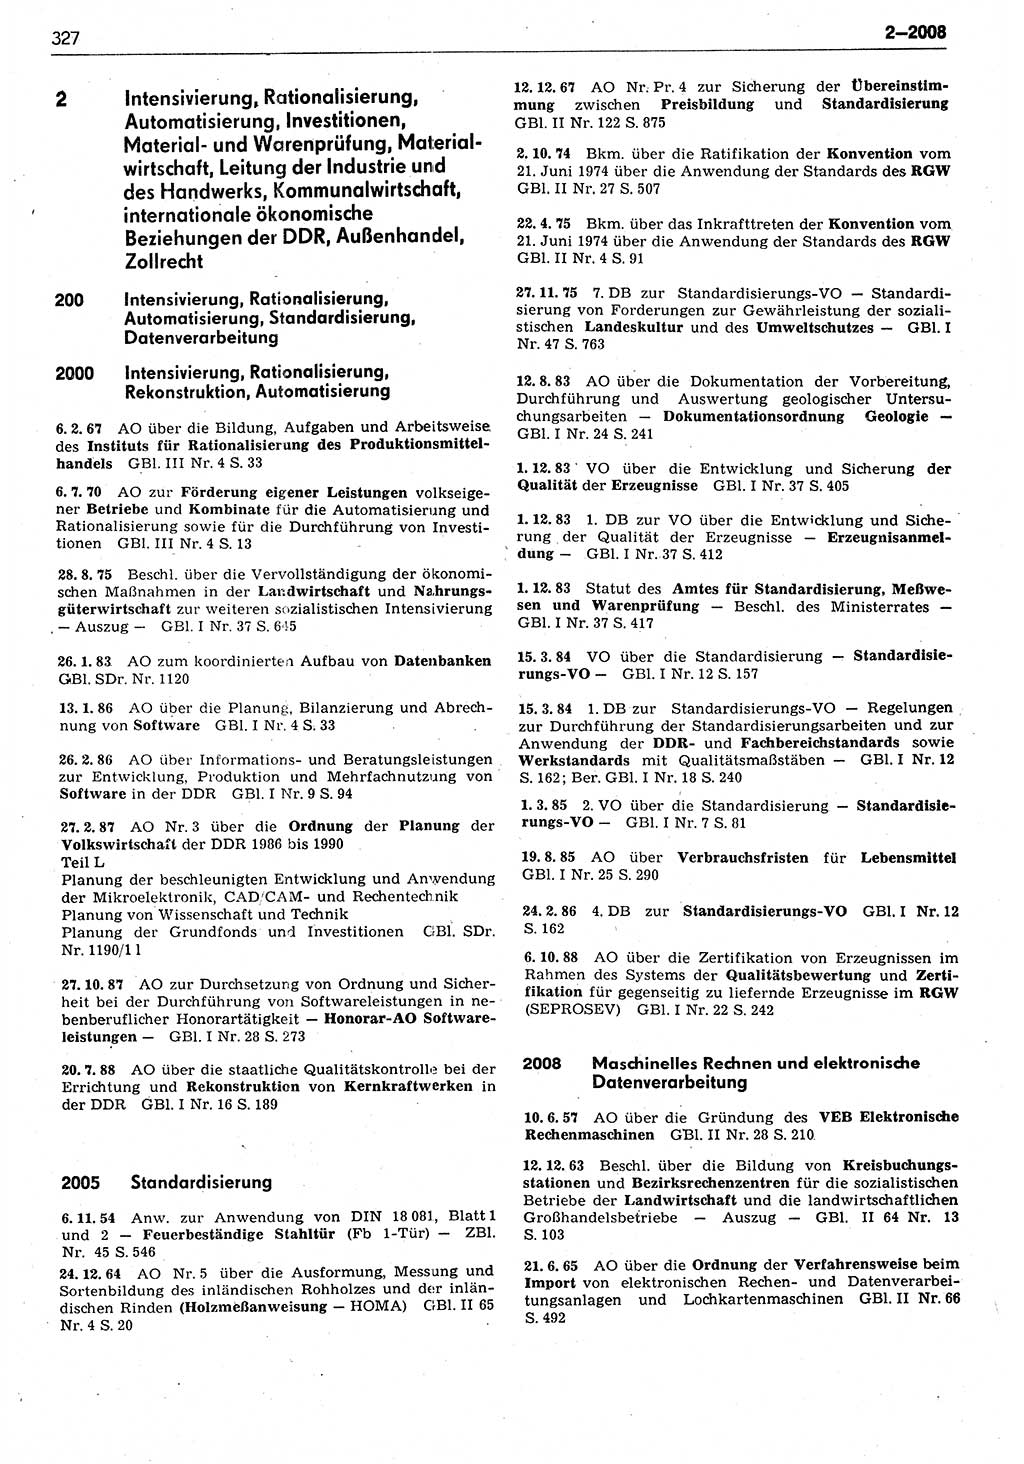 Das geltende Recht der Deutschen Demokratischen Republik (DDR) 1949-1988, Seite 327 (Gelt. R. DDR 1949-1988, S. 327)